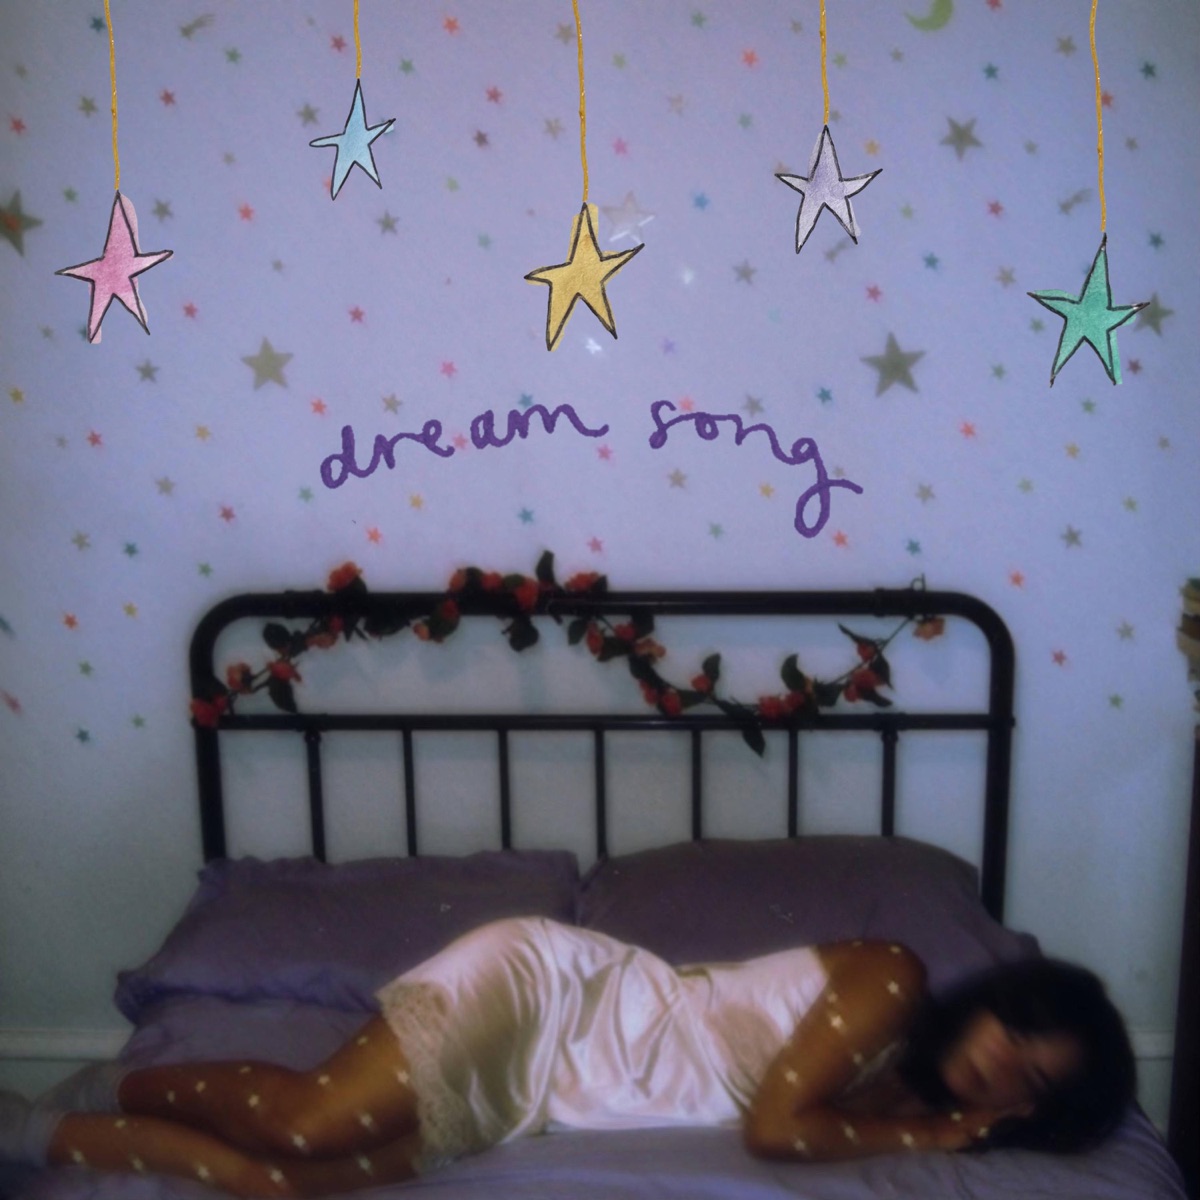 Shallow Alcove — Dream Song cover artwork